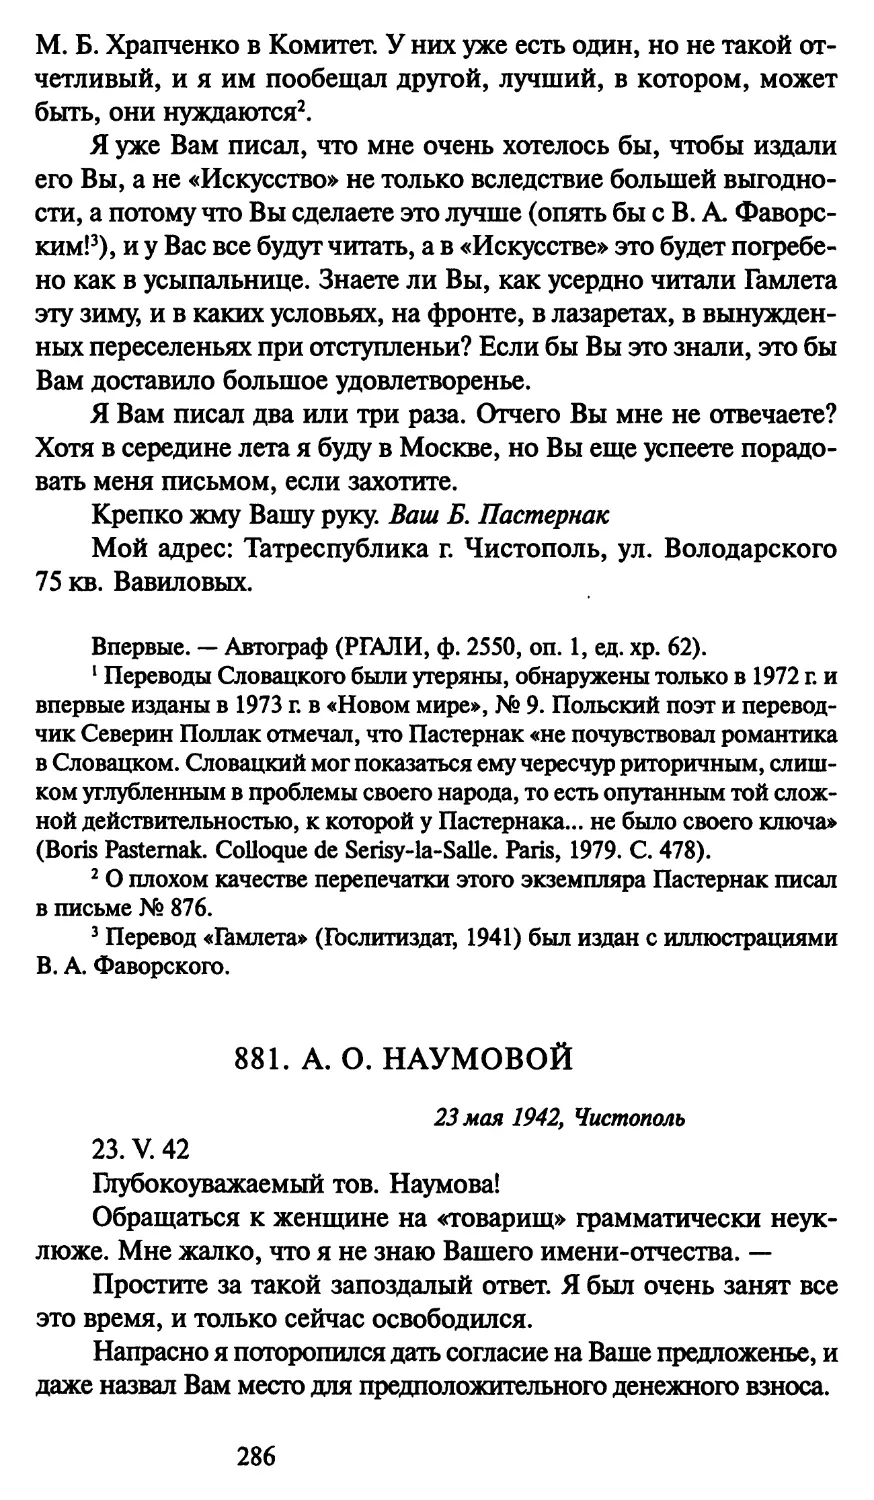 881. А. О. Наумовой 23 мая 1942